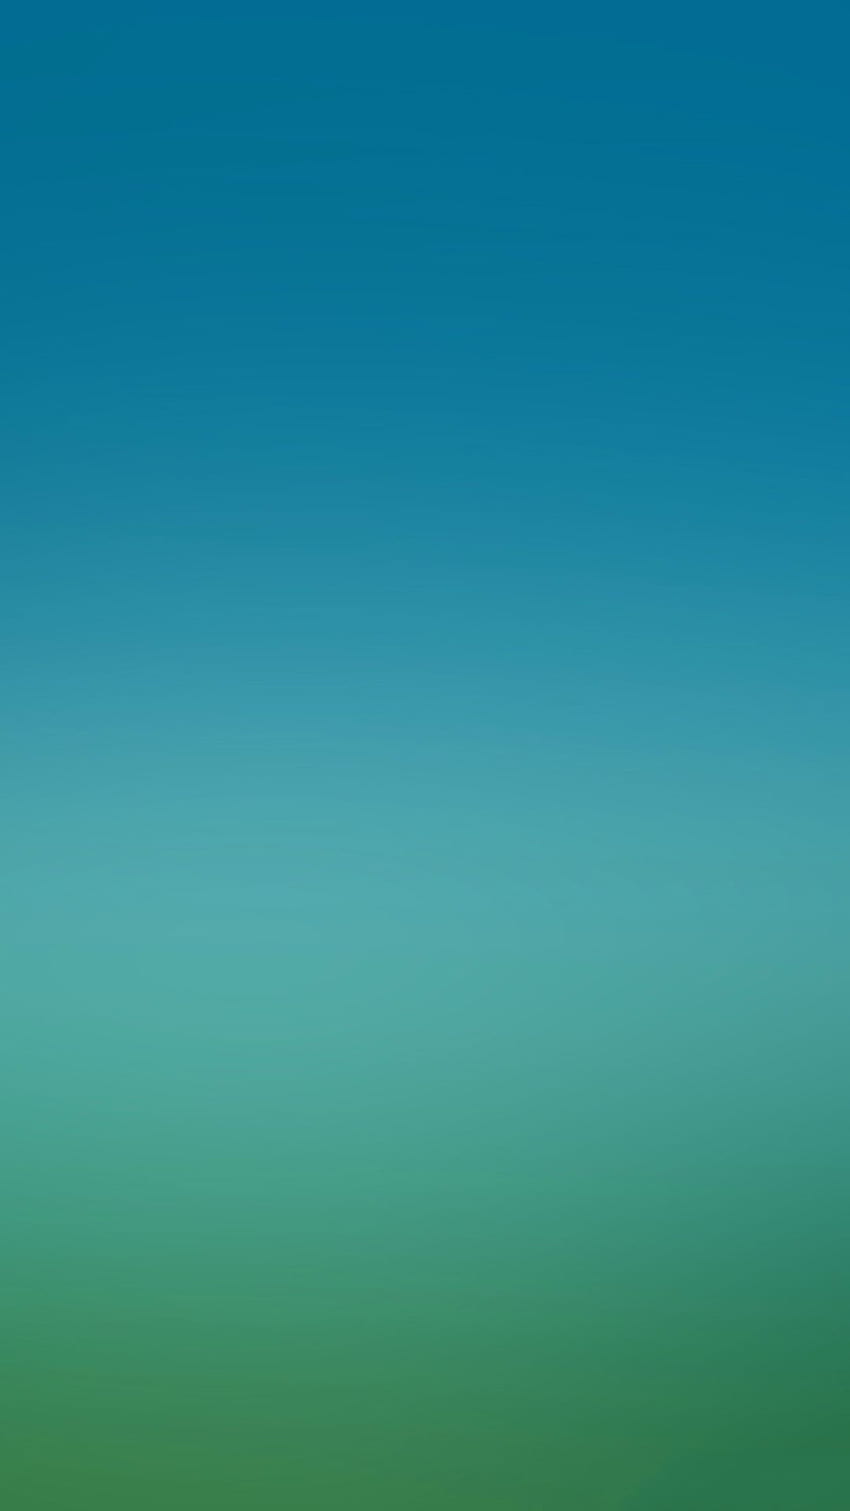 ブルー グリーン ソフト グラデーション ぼかし iPhone 6 . iPhone、iPadワンストップ。 タフ、ヒジャウ、ケメワハン、ブルー、ティール HD電話の壁紙